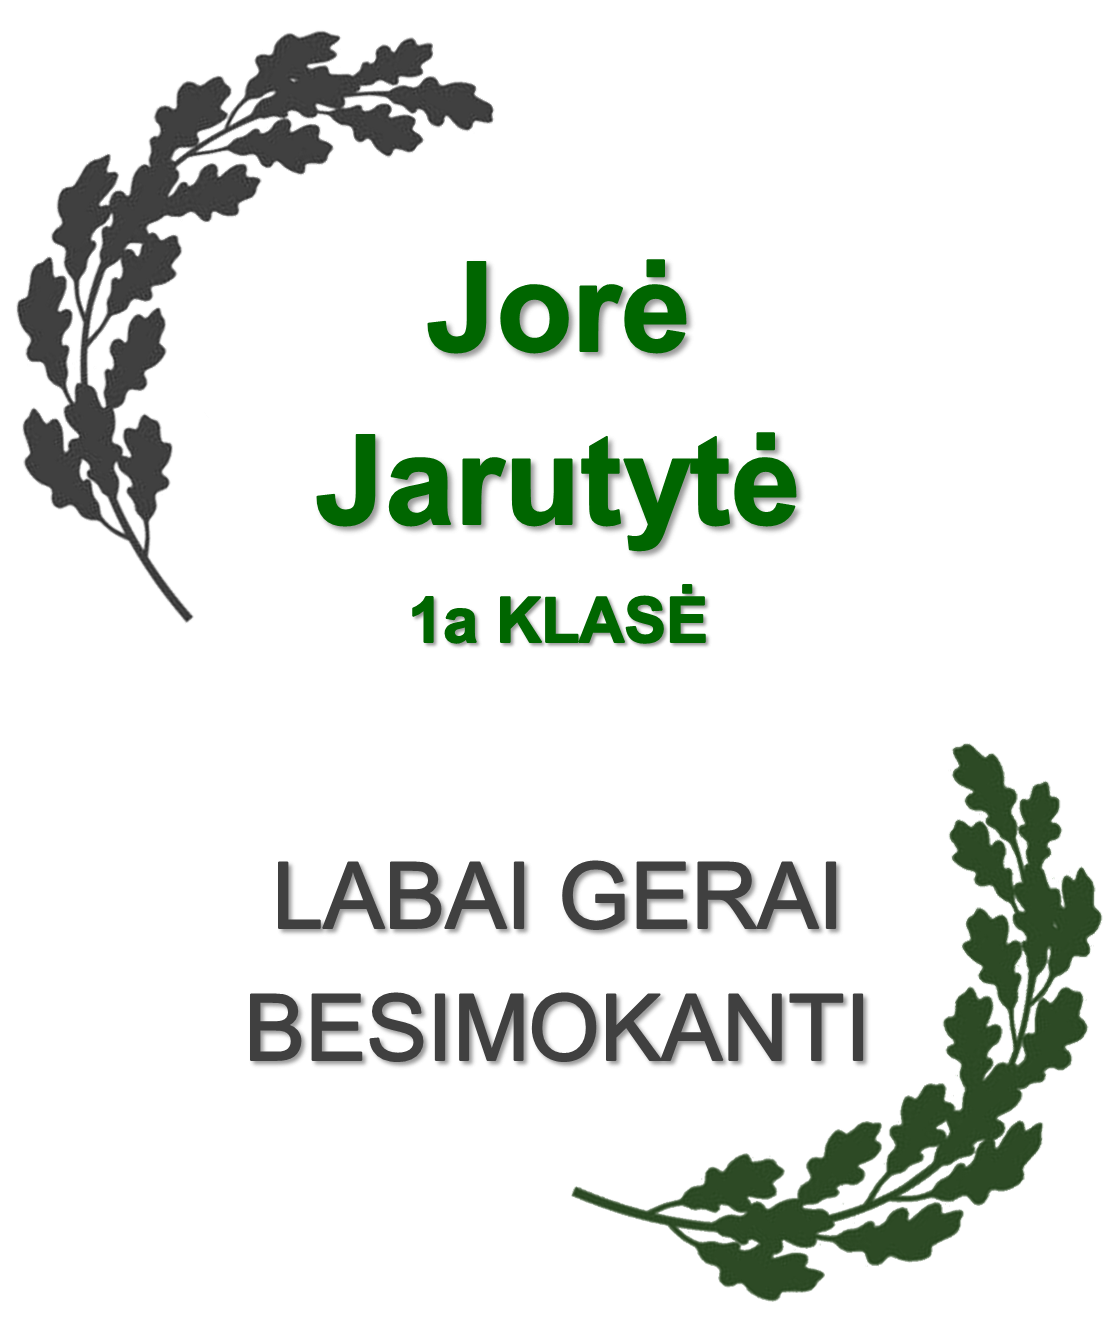 1a-Jarutyte-J.